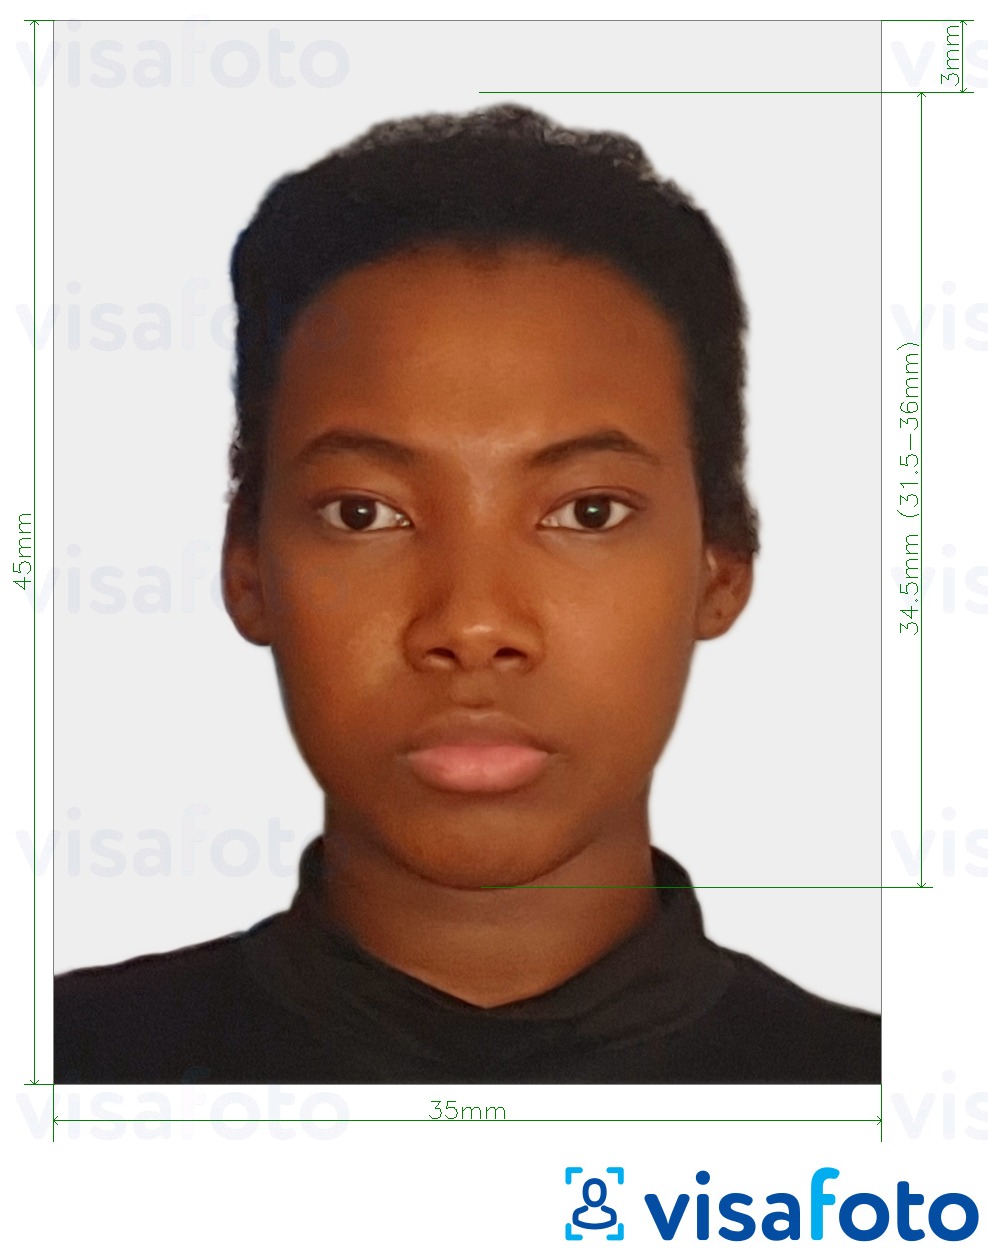 Eksempel på billede for Congo (Brazzaville) pas 35x45 mm (3,5x4,5 cm) med præcis størrelsesspecifikation.